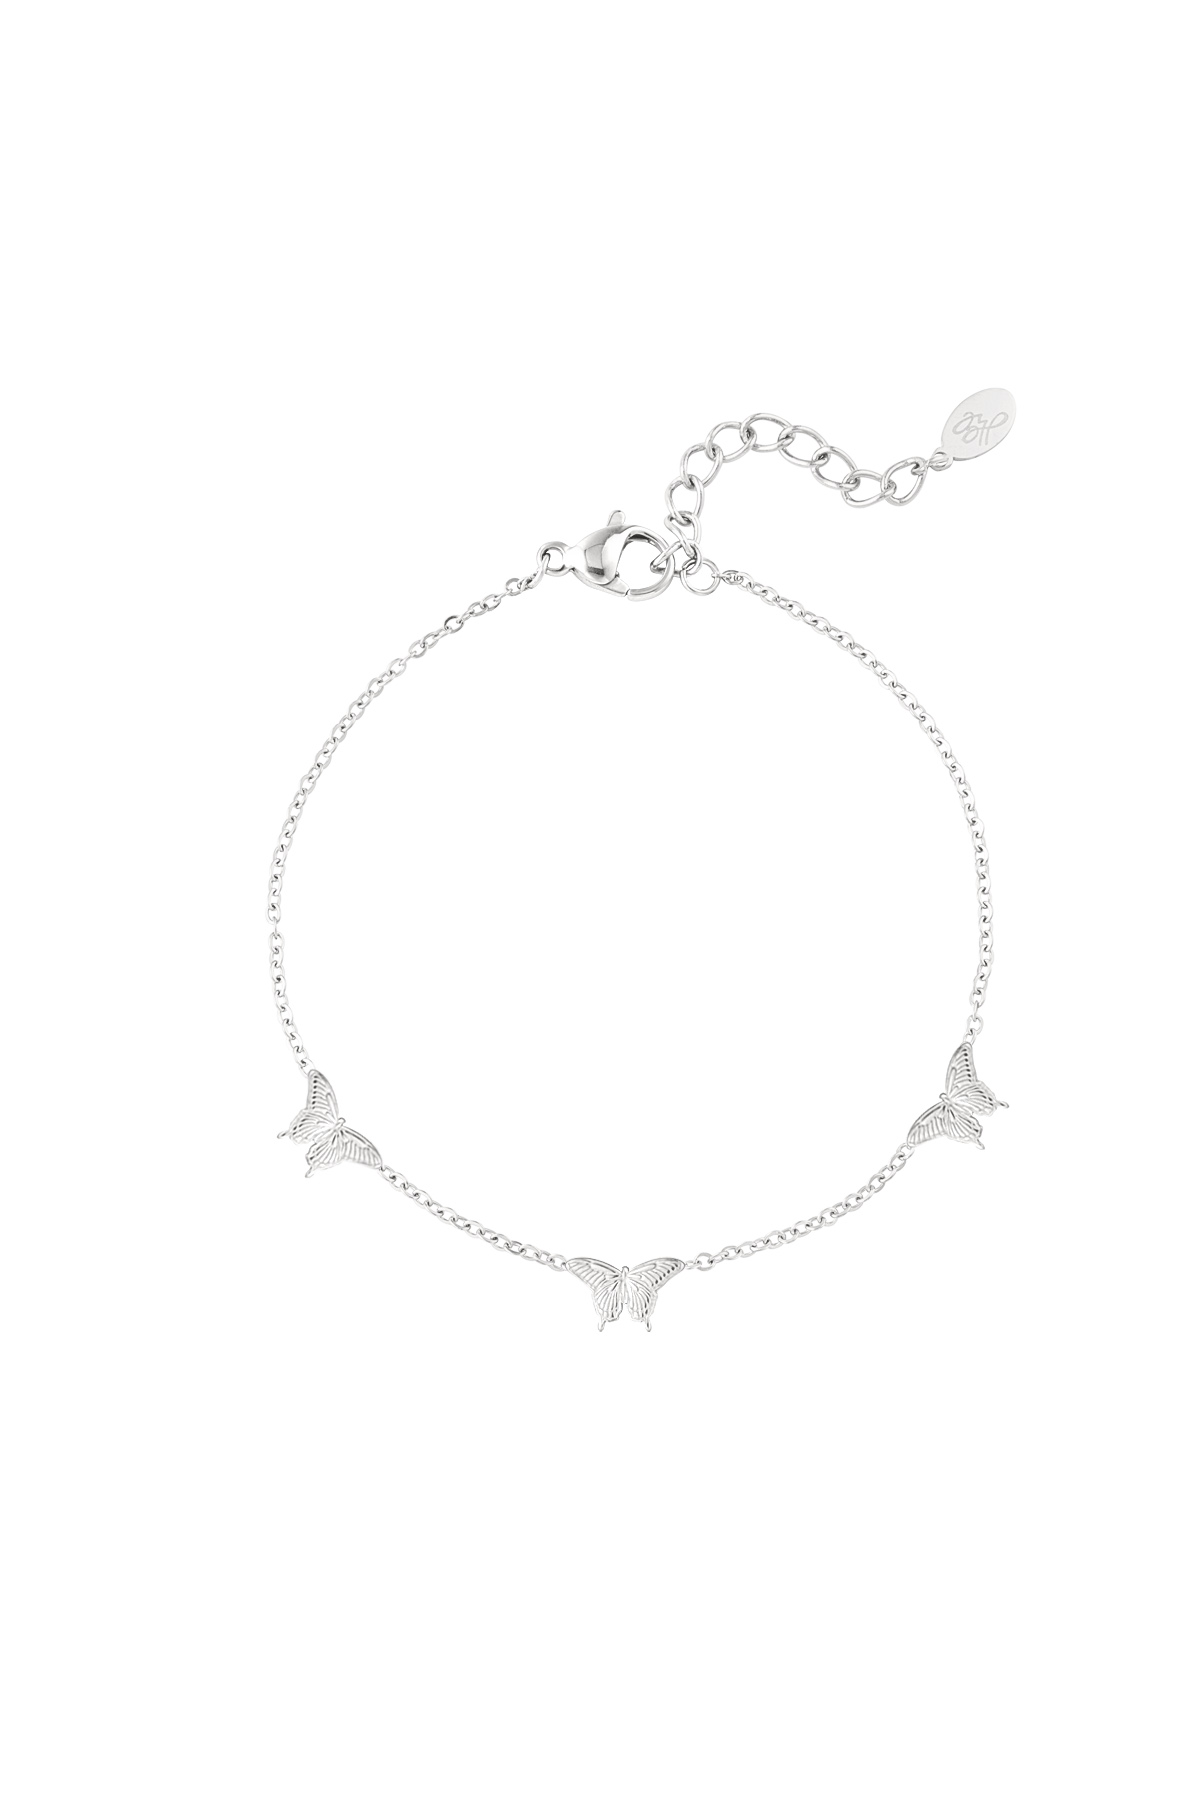 Bracelet 3 butterflies - Silver h5 